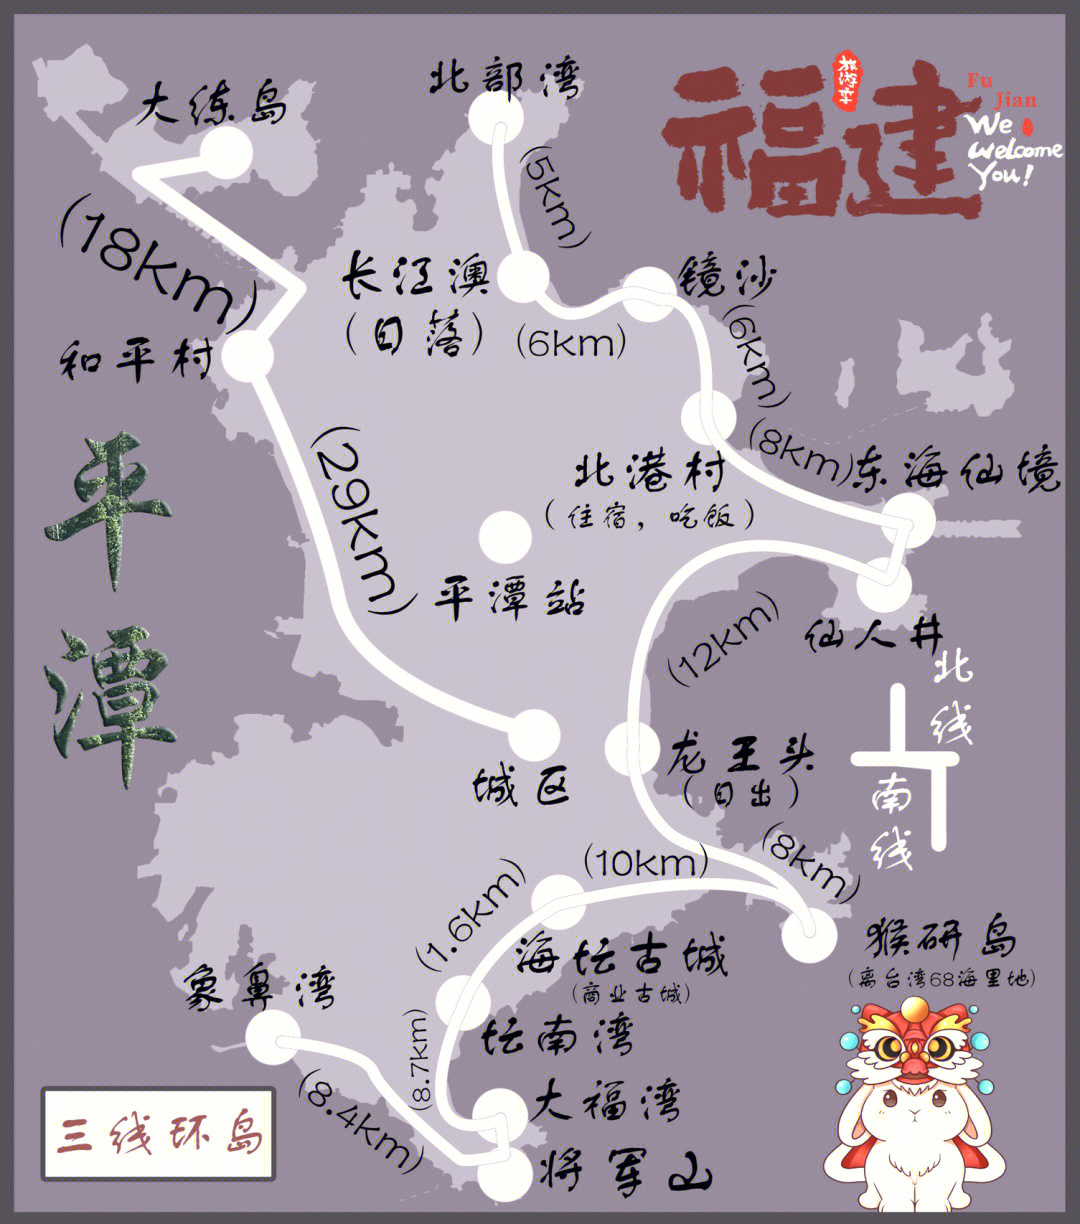 平潭岛地图 高清图片